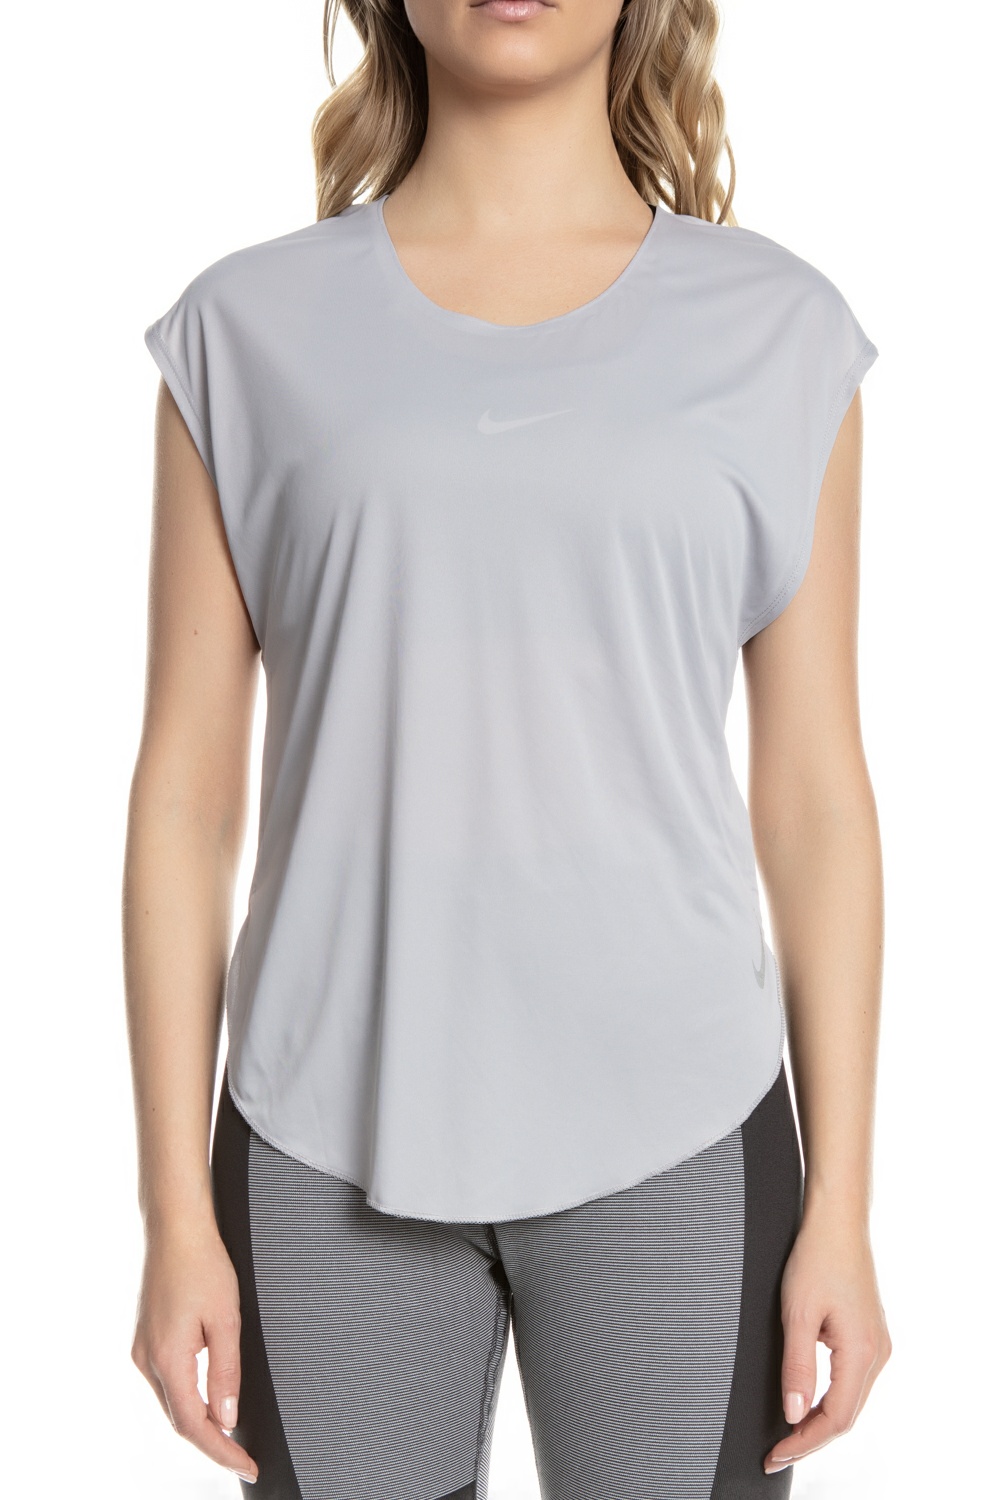 Γυναικεία/Ρούχα/Αθλητικά/T-shirt-Τοπ NIKE - Γυναικεία κοντομάνικη μπλούζα Nike City Sleek γκρι-ασημί